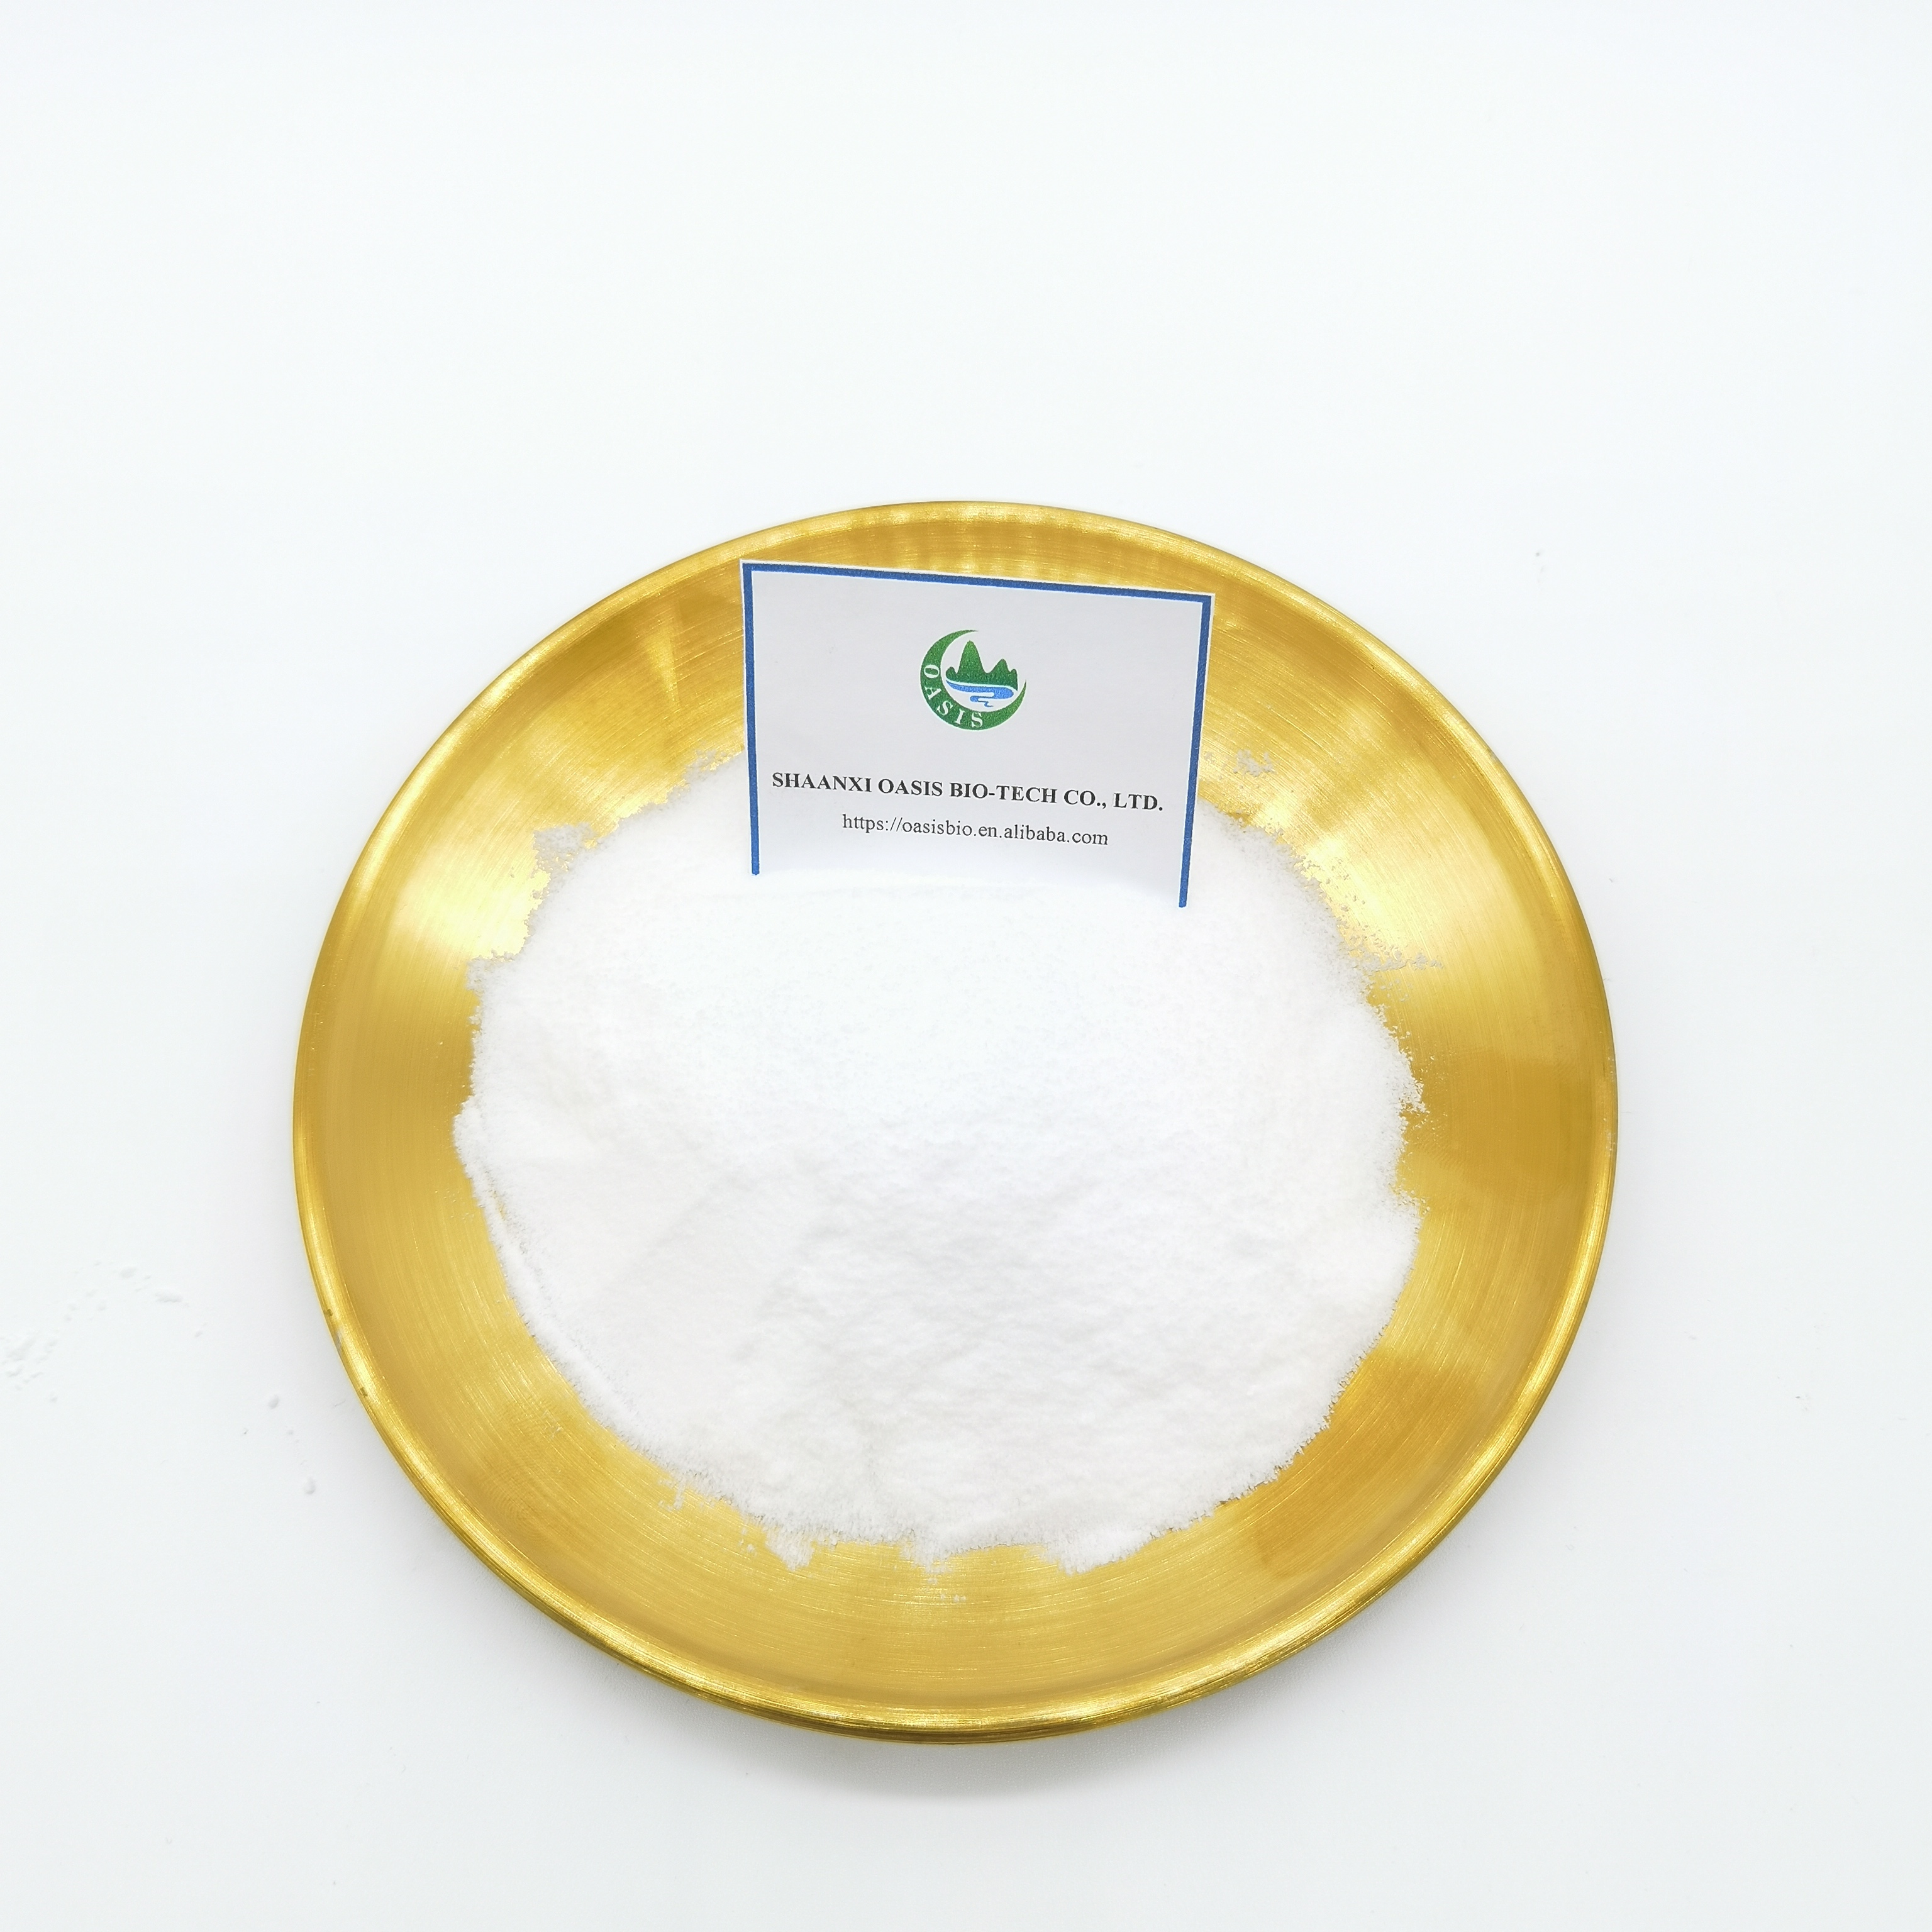 Sustancia química veterinaria del polvo CAS 73231-34-2 de las materias primas del florfenicol